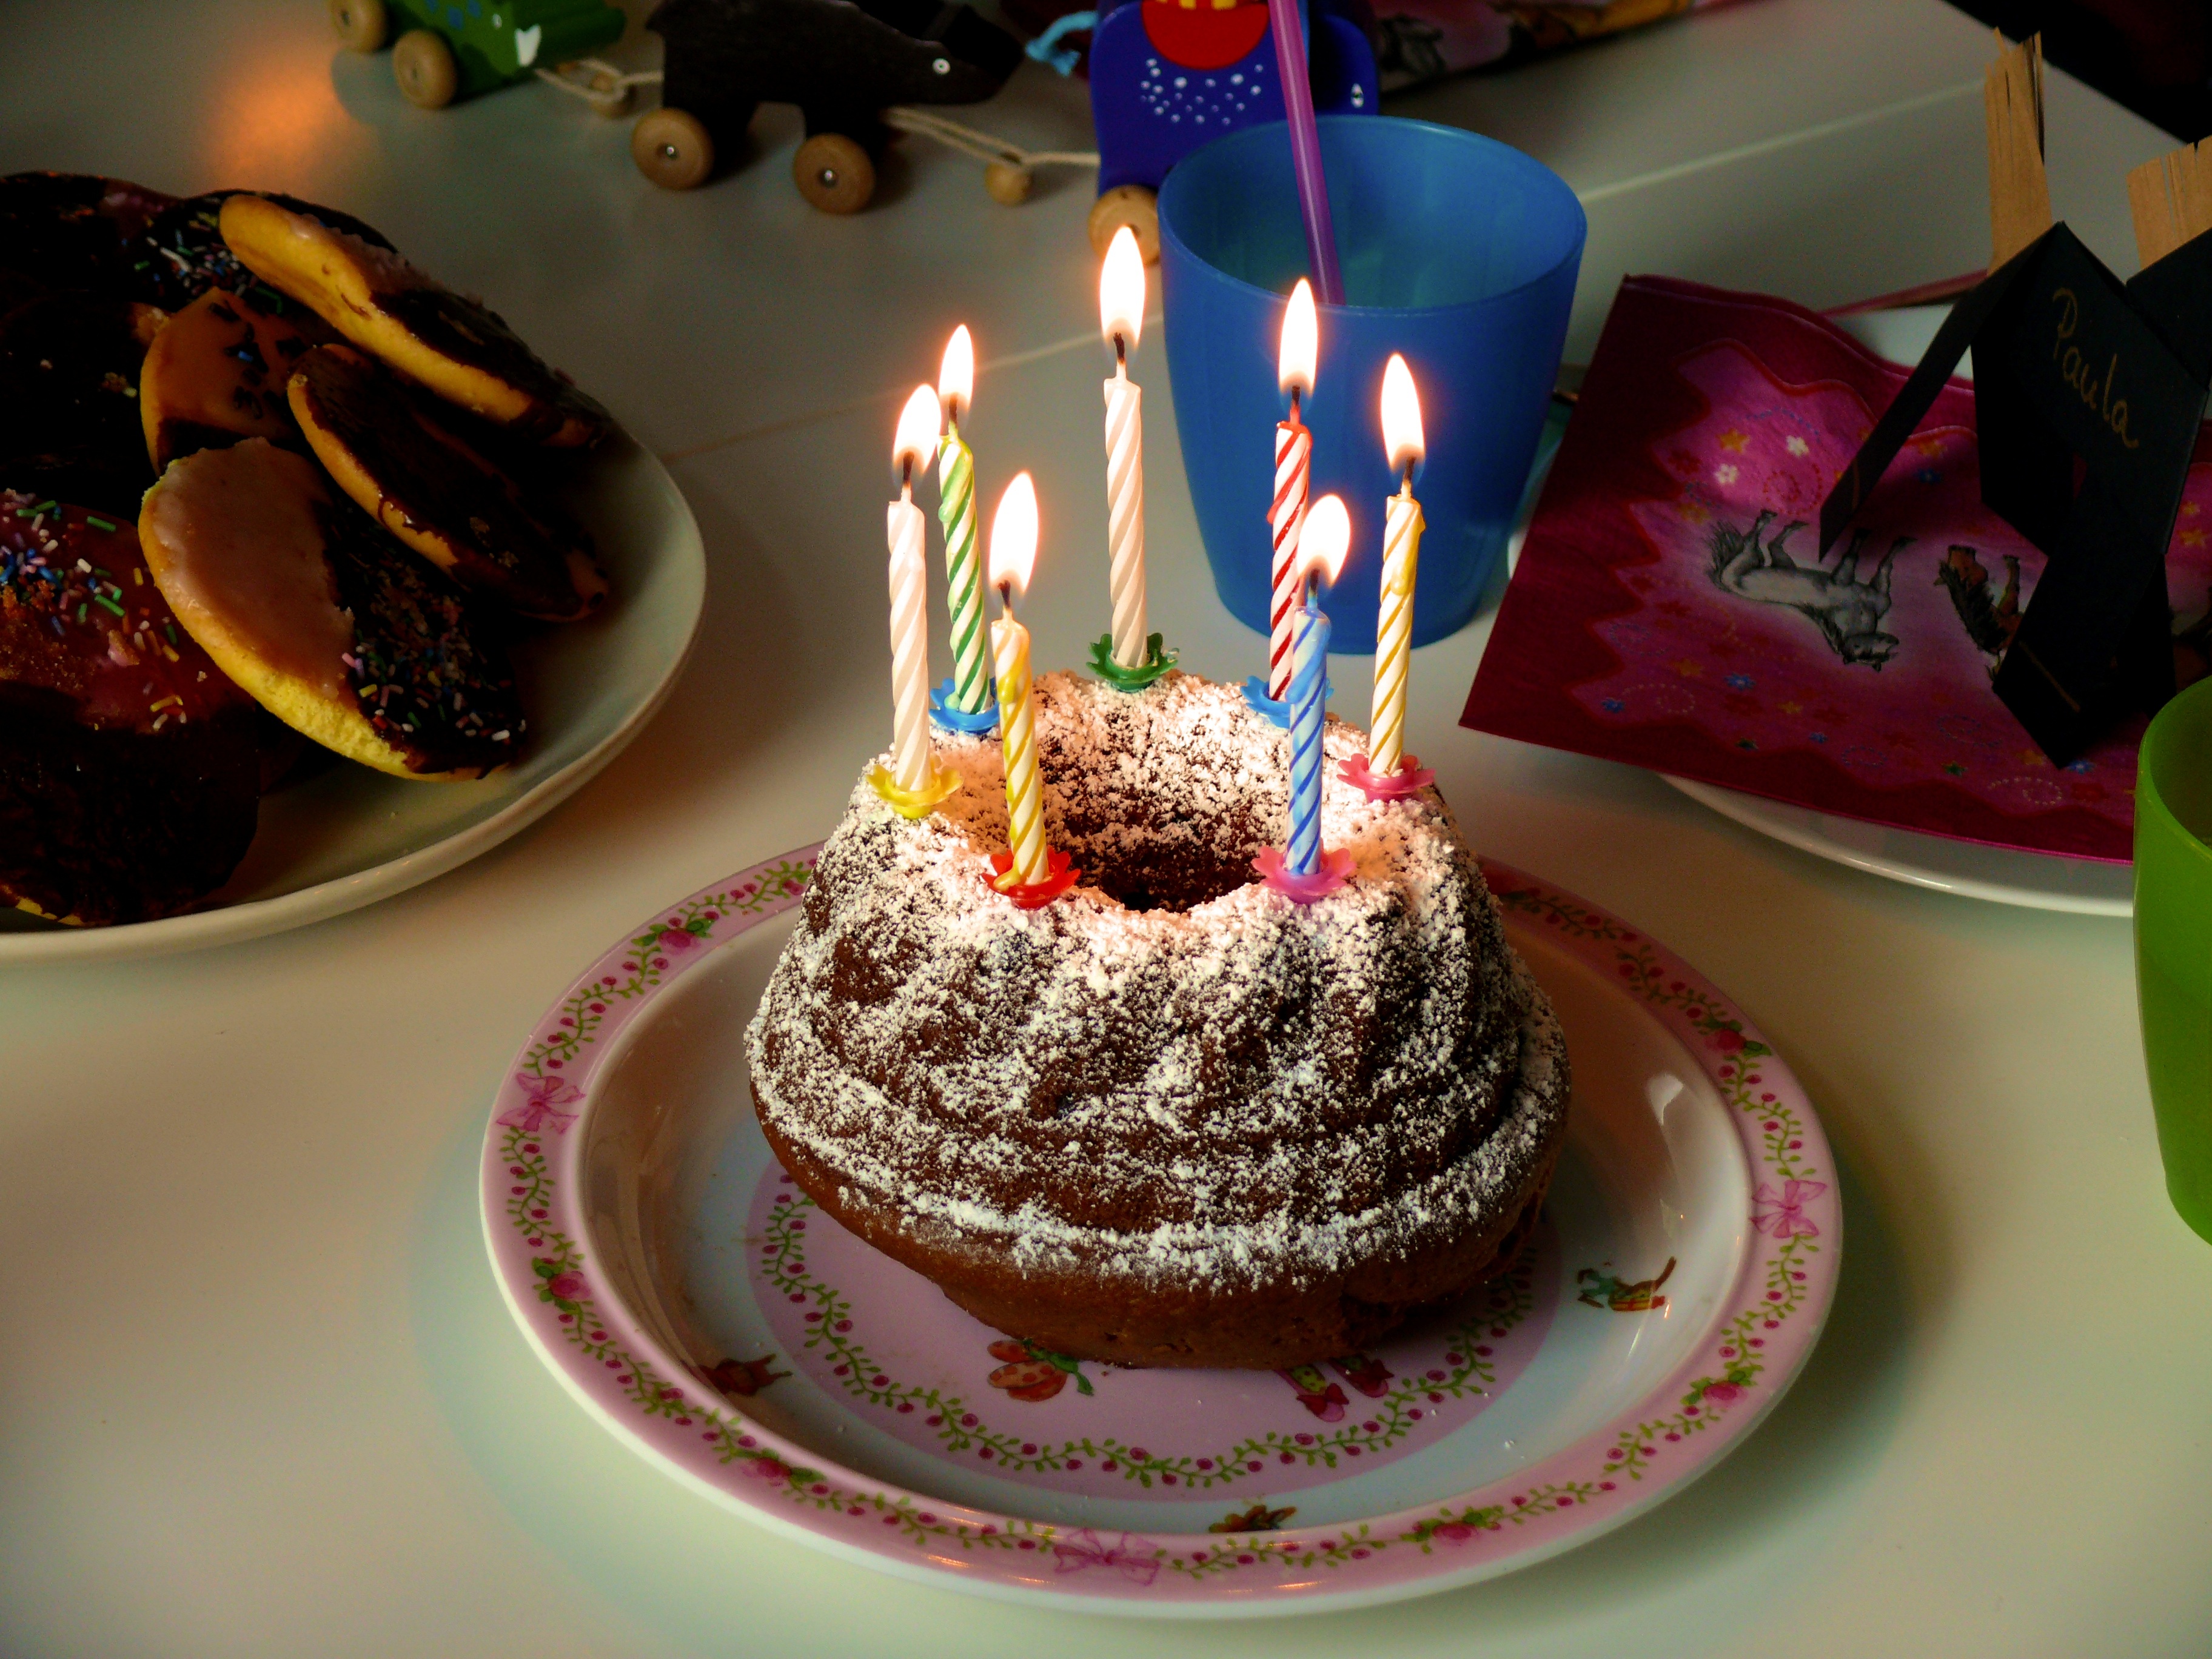 Cake candle. Торт с днем рождения!. Красивый торт со свечами. Свечи для торта. Праздничный торт со свечками.